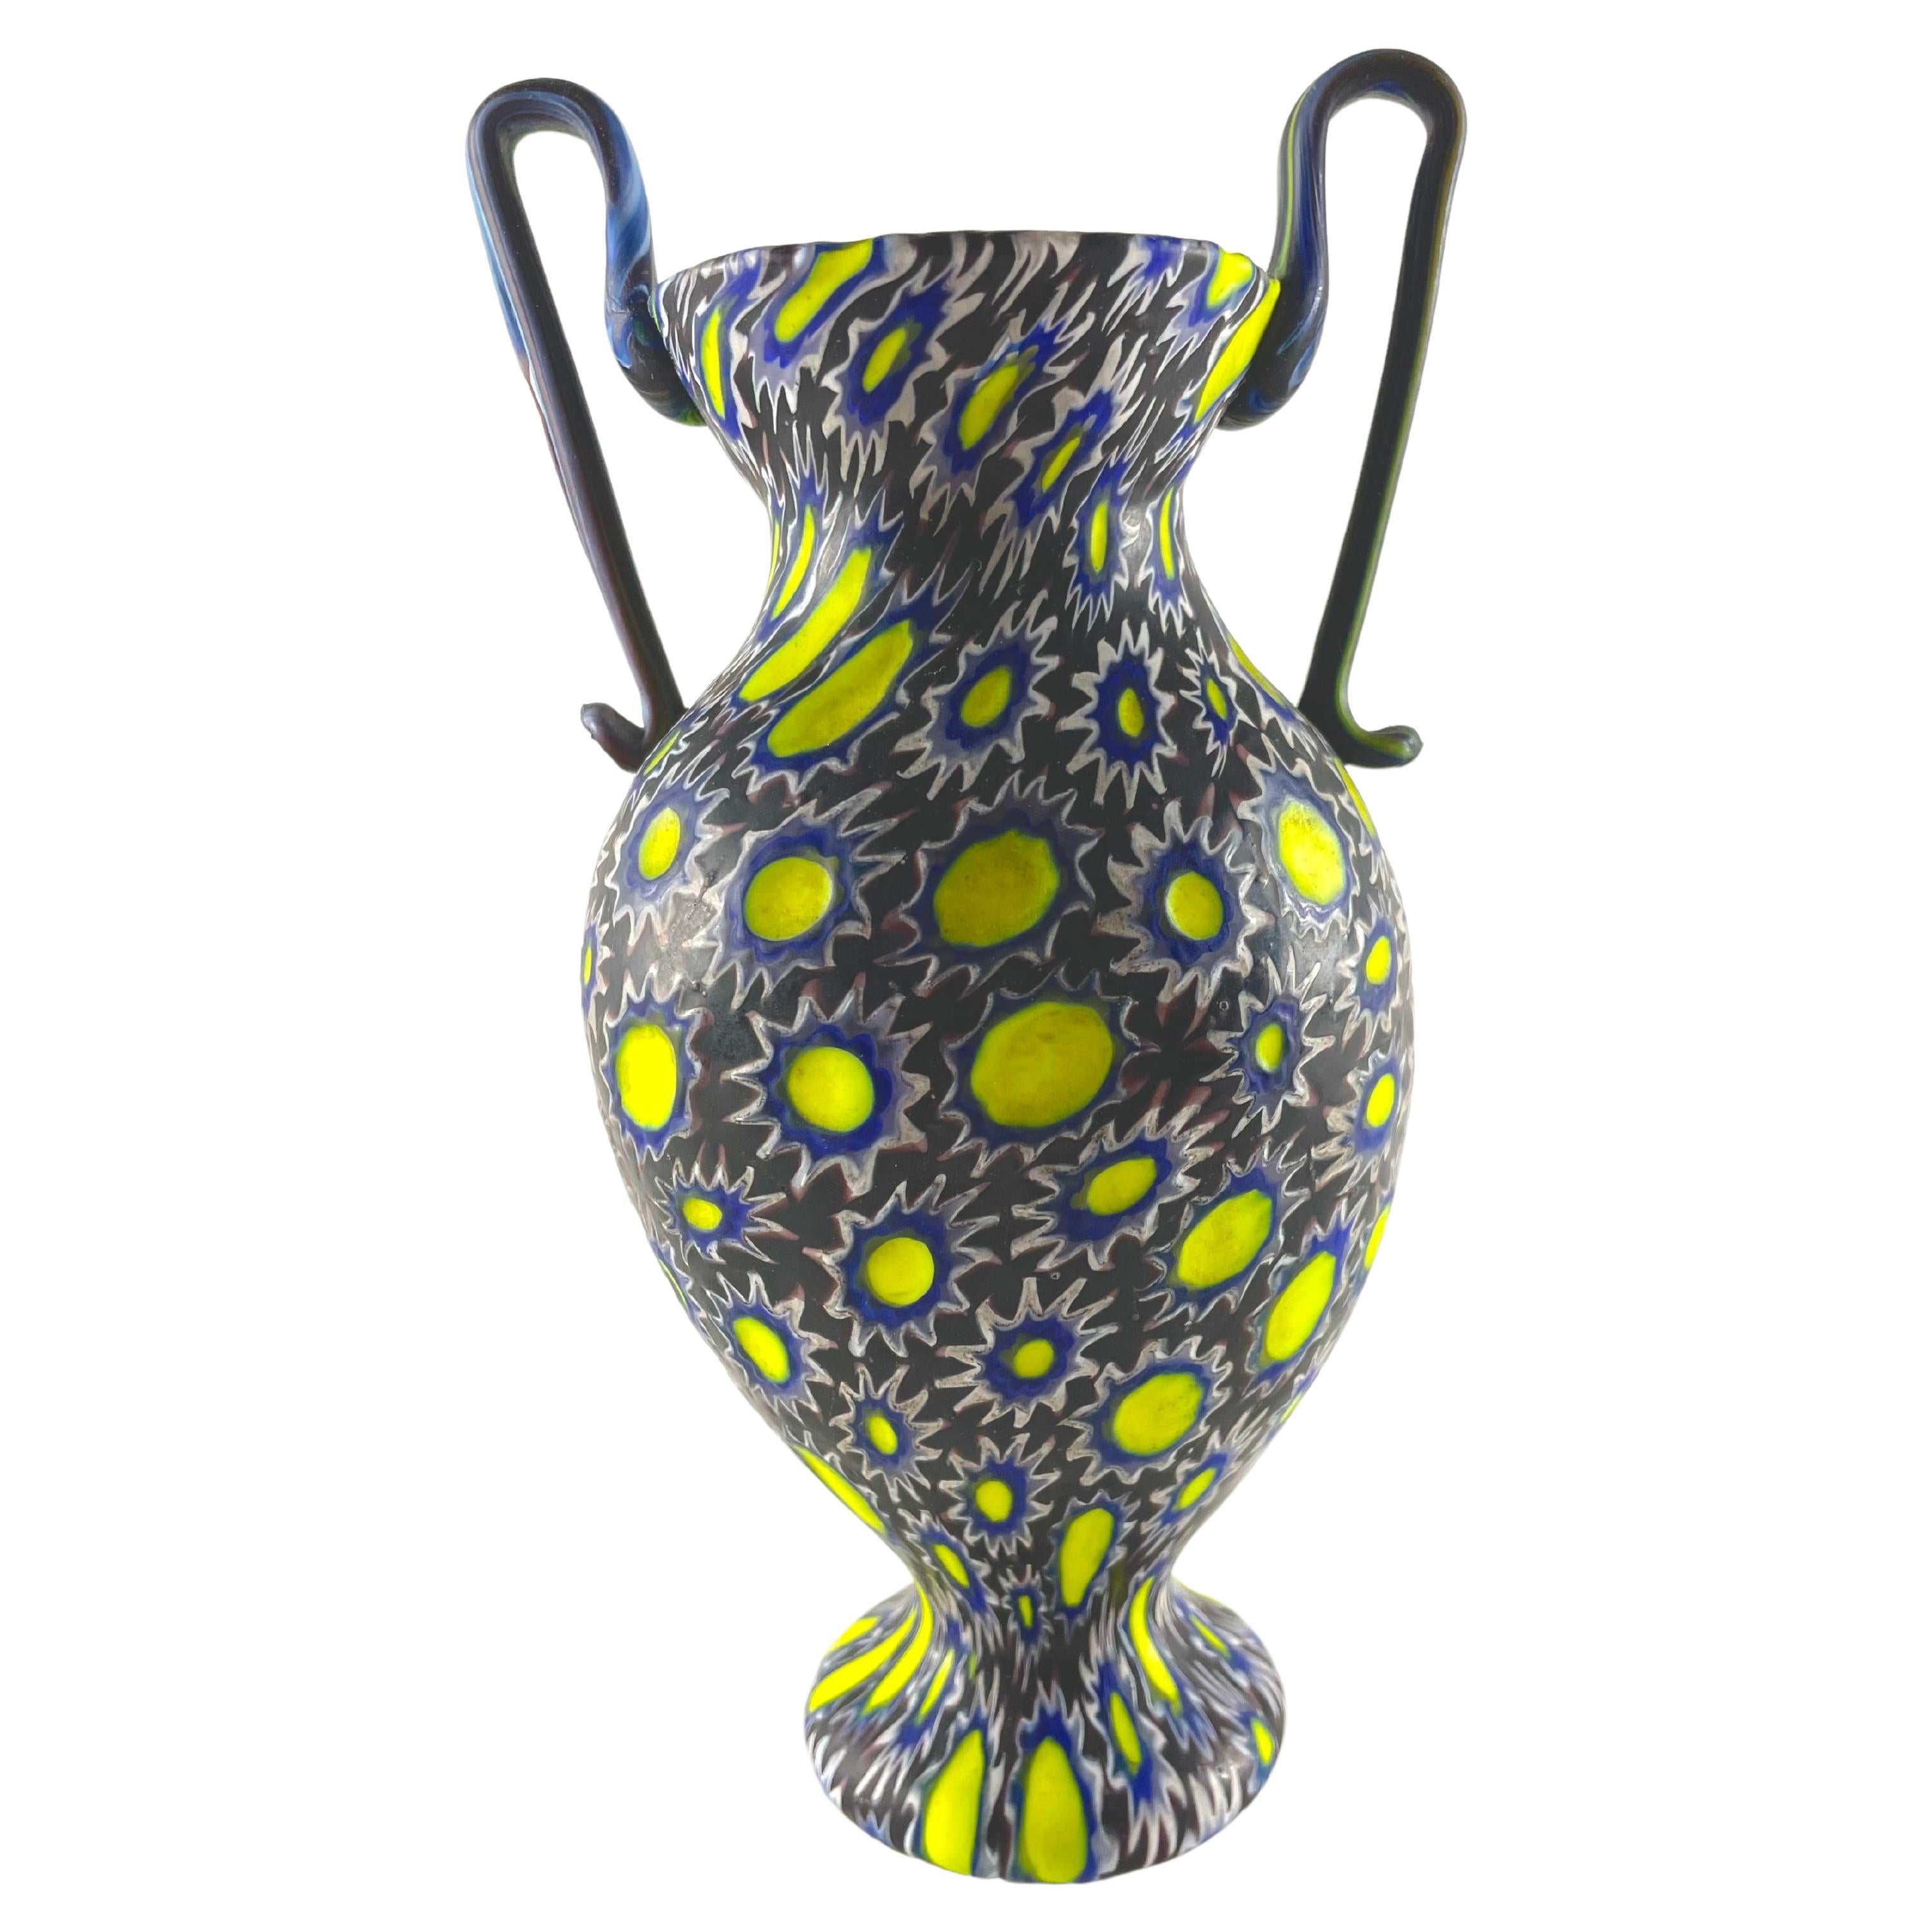 Vase in dark murrina, bright yellow, FRATELLI TOSO MURANO, 1950 circa